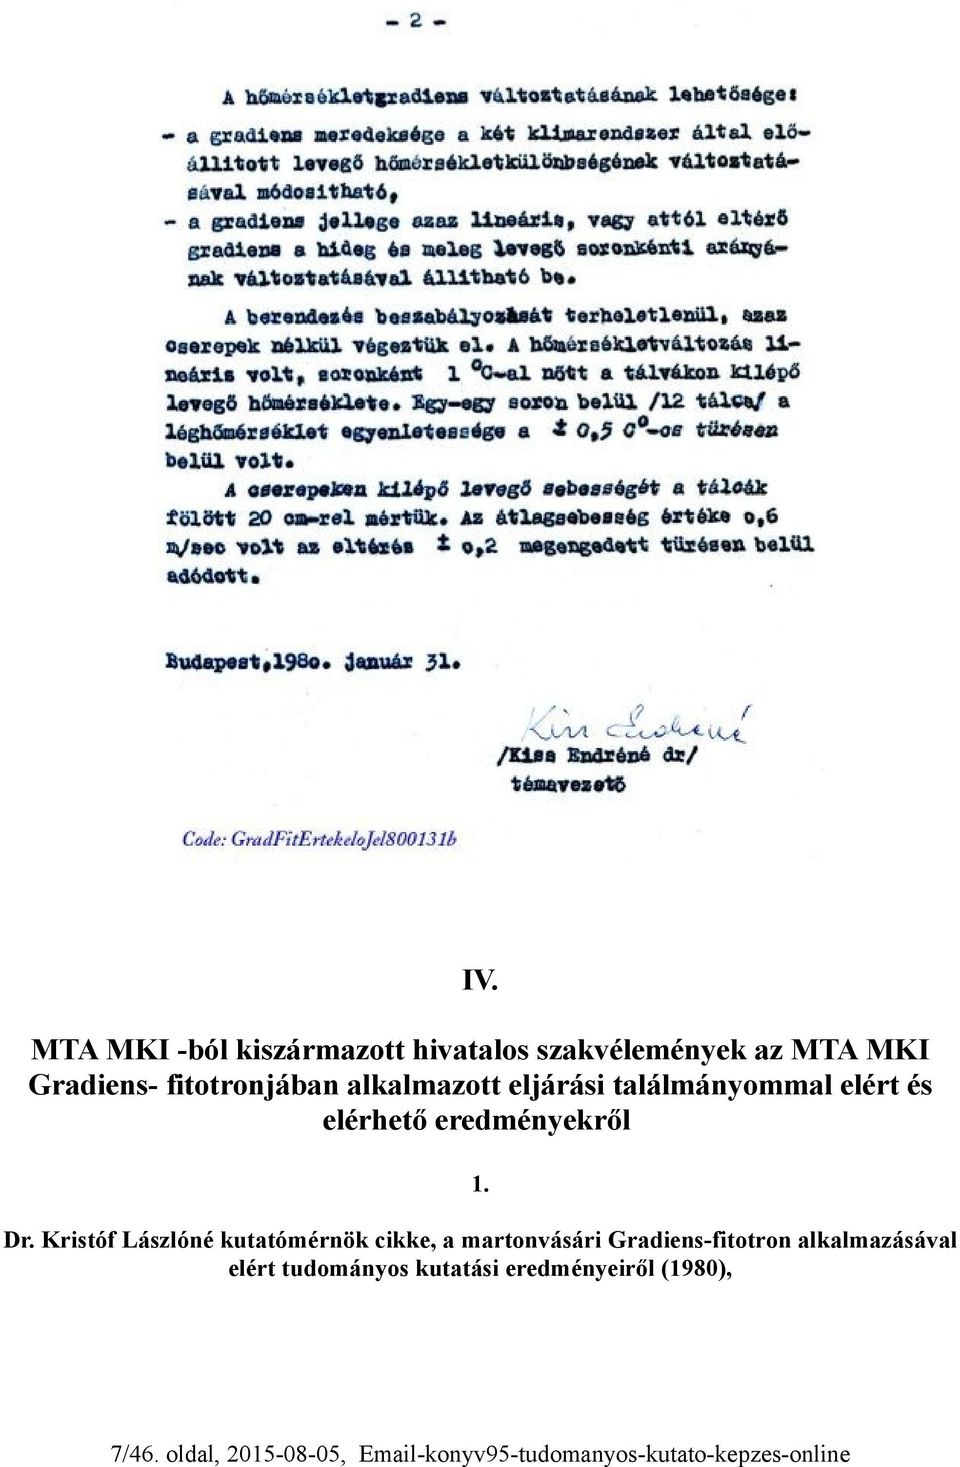 Kristóf Lászlóné kutatómérnök cikke, a martonvásári Gradiens-fitotron alkalmazásával elért